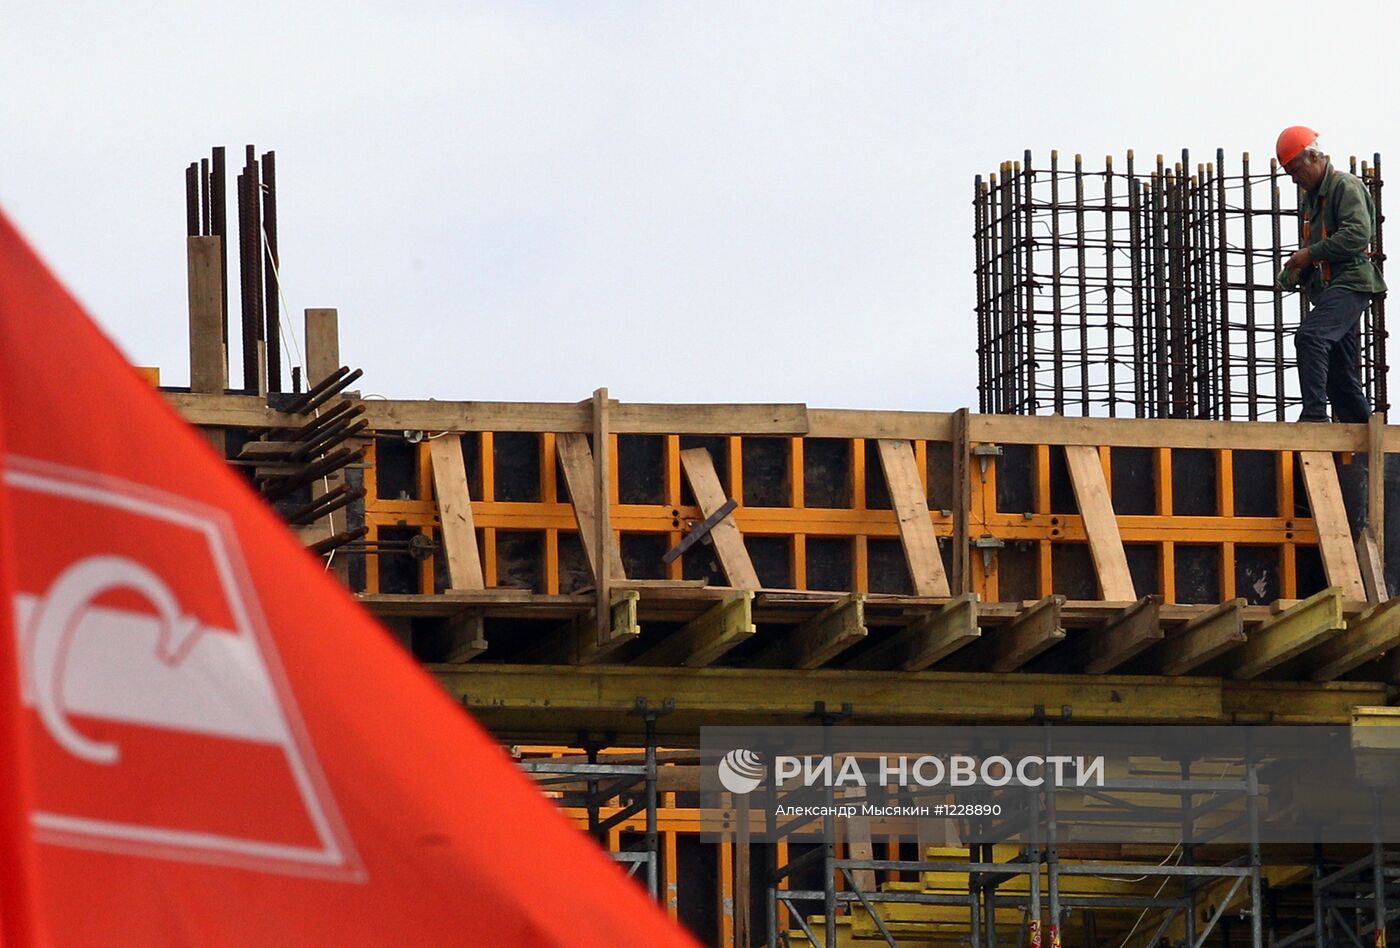 Строительство футбольного стадиона "Спартак"